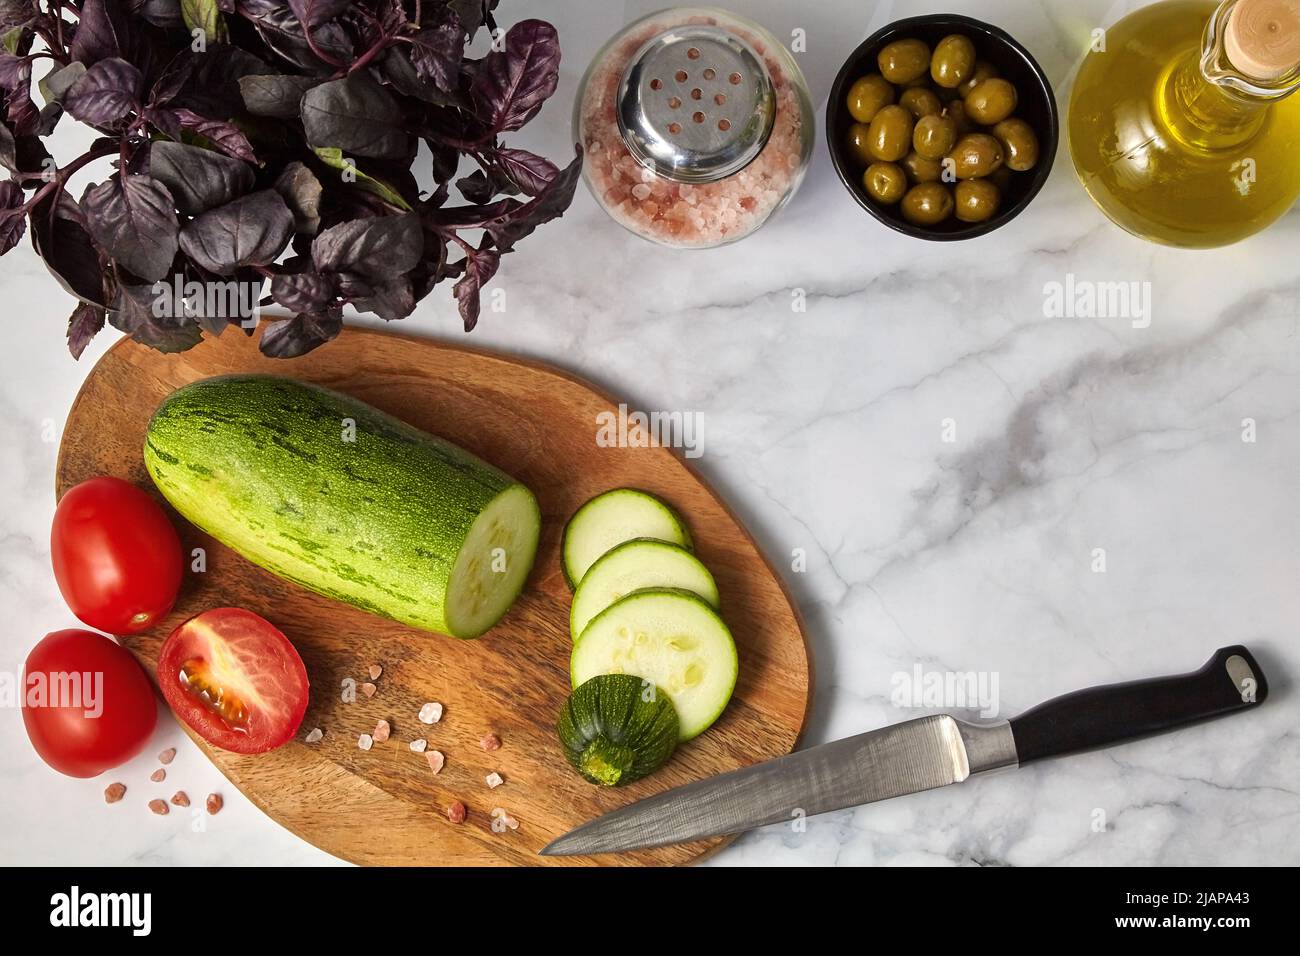 Zucchini tomates olives huile de basilic et sel sur une planche en bois sur une table légère. Ingrédients pour préparer des repas végétariens Banque D'Images